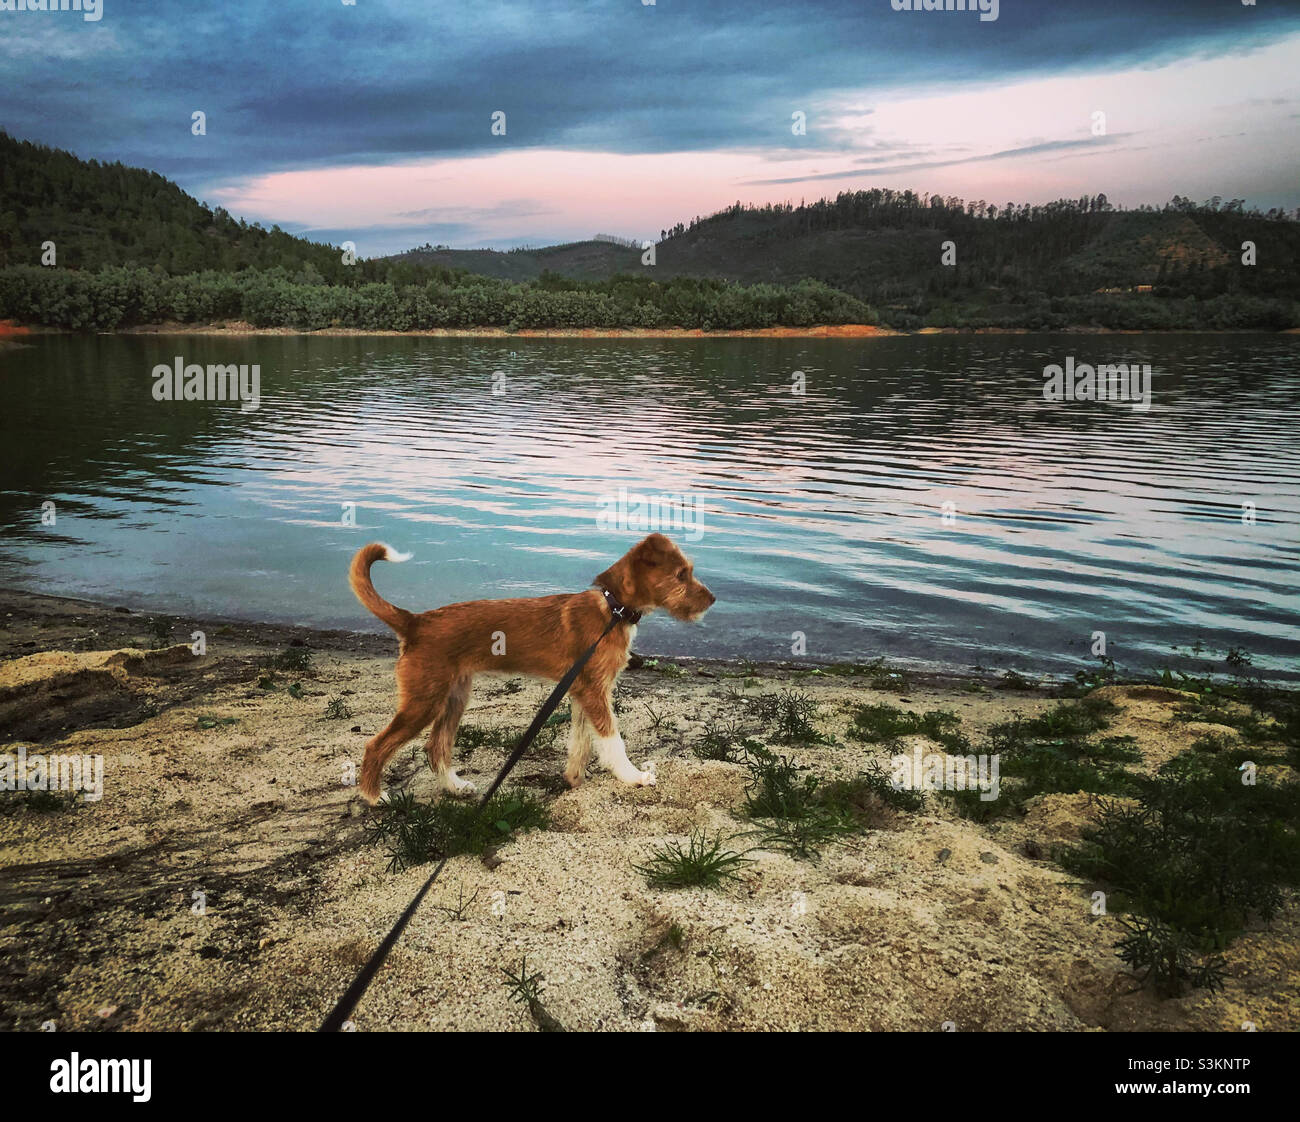 Ein junger Terrier an ausgestreckter Leine schaut wach auf den Rand des Wassers, während der Abend sich verdunkelt und der Himmel über dem Fluss verdunkelt Stockfoto